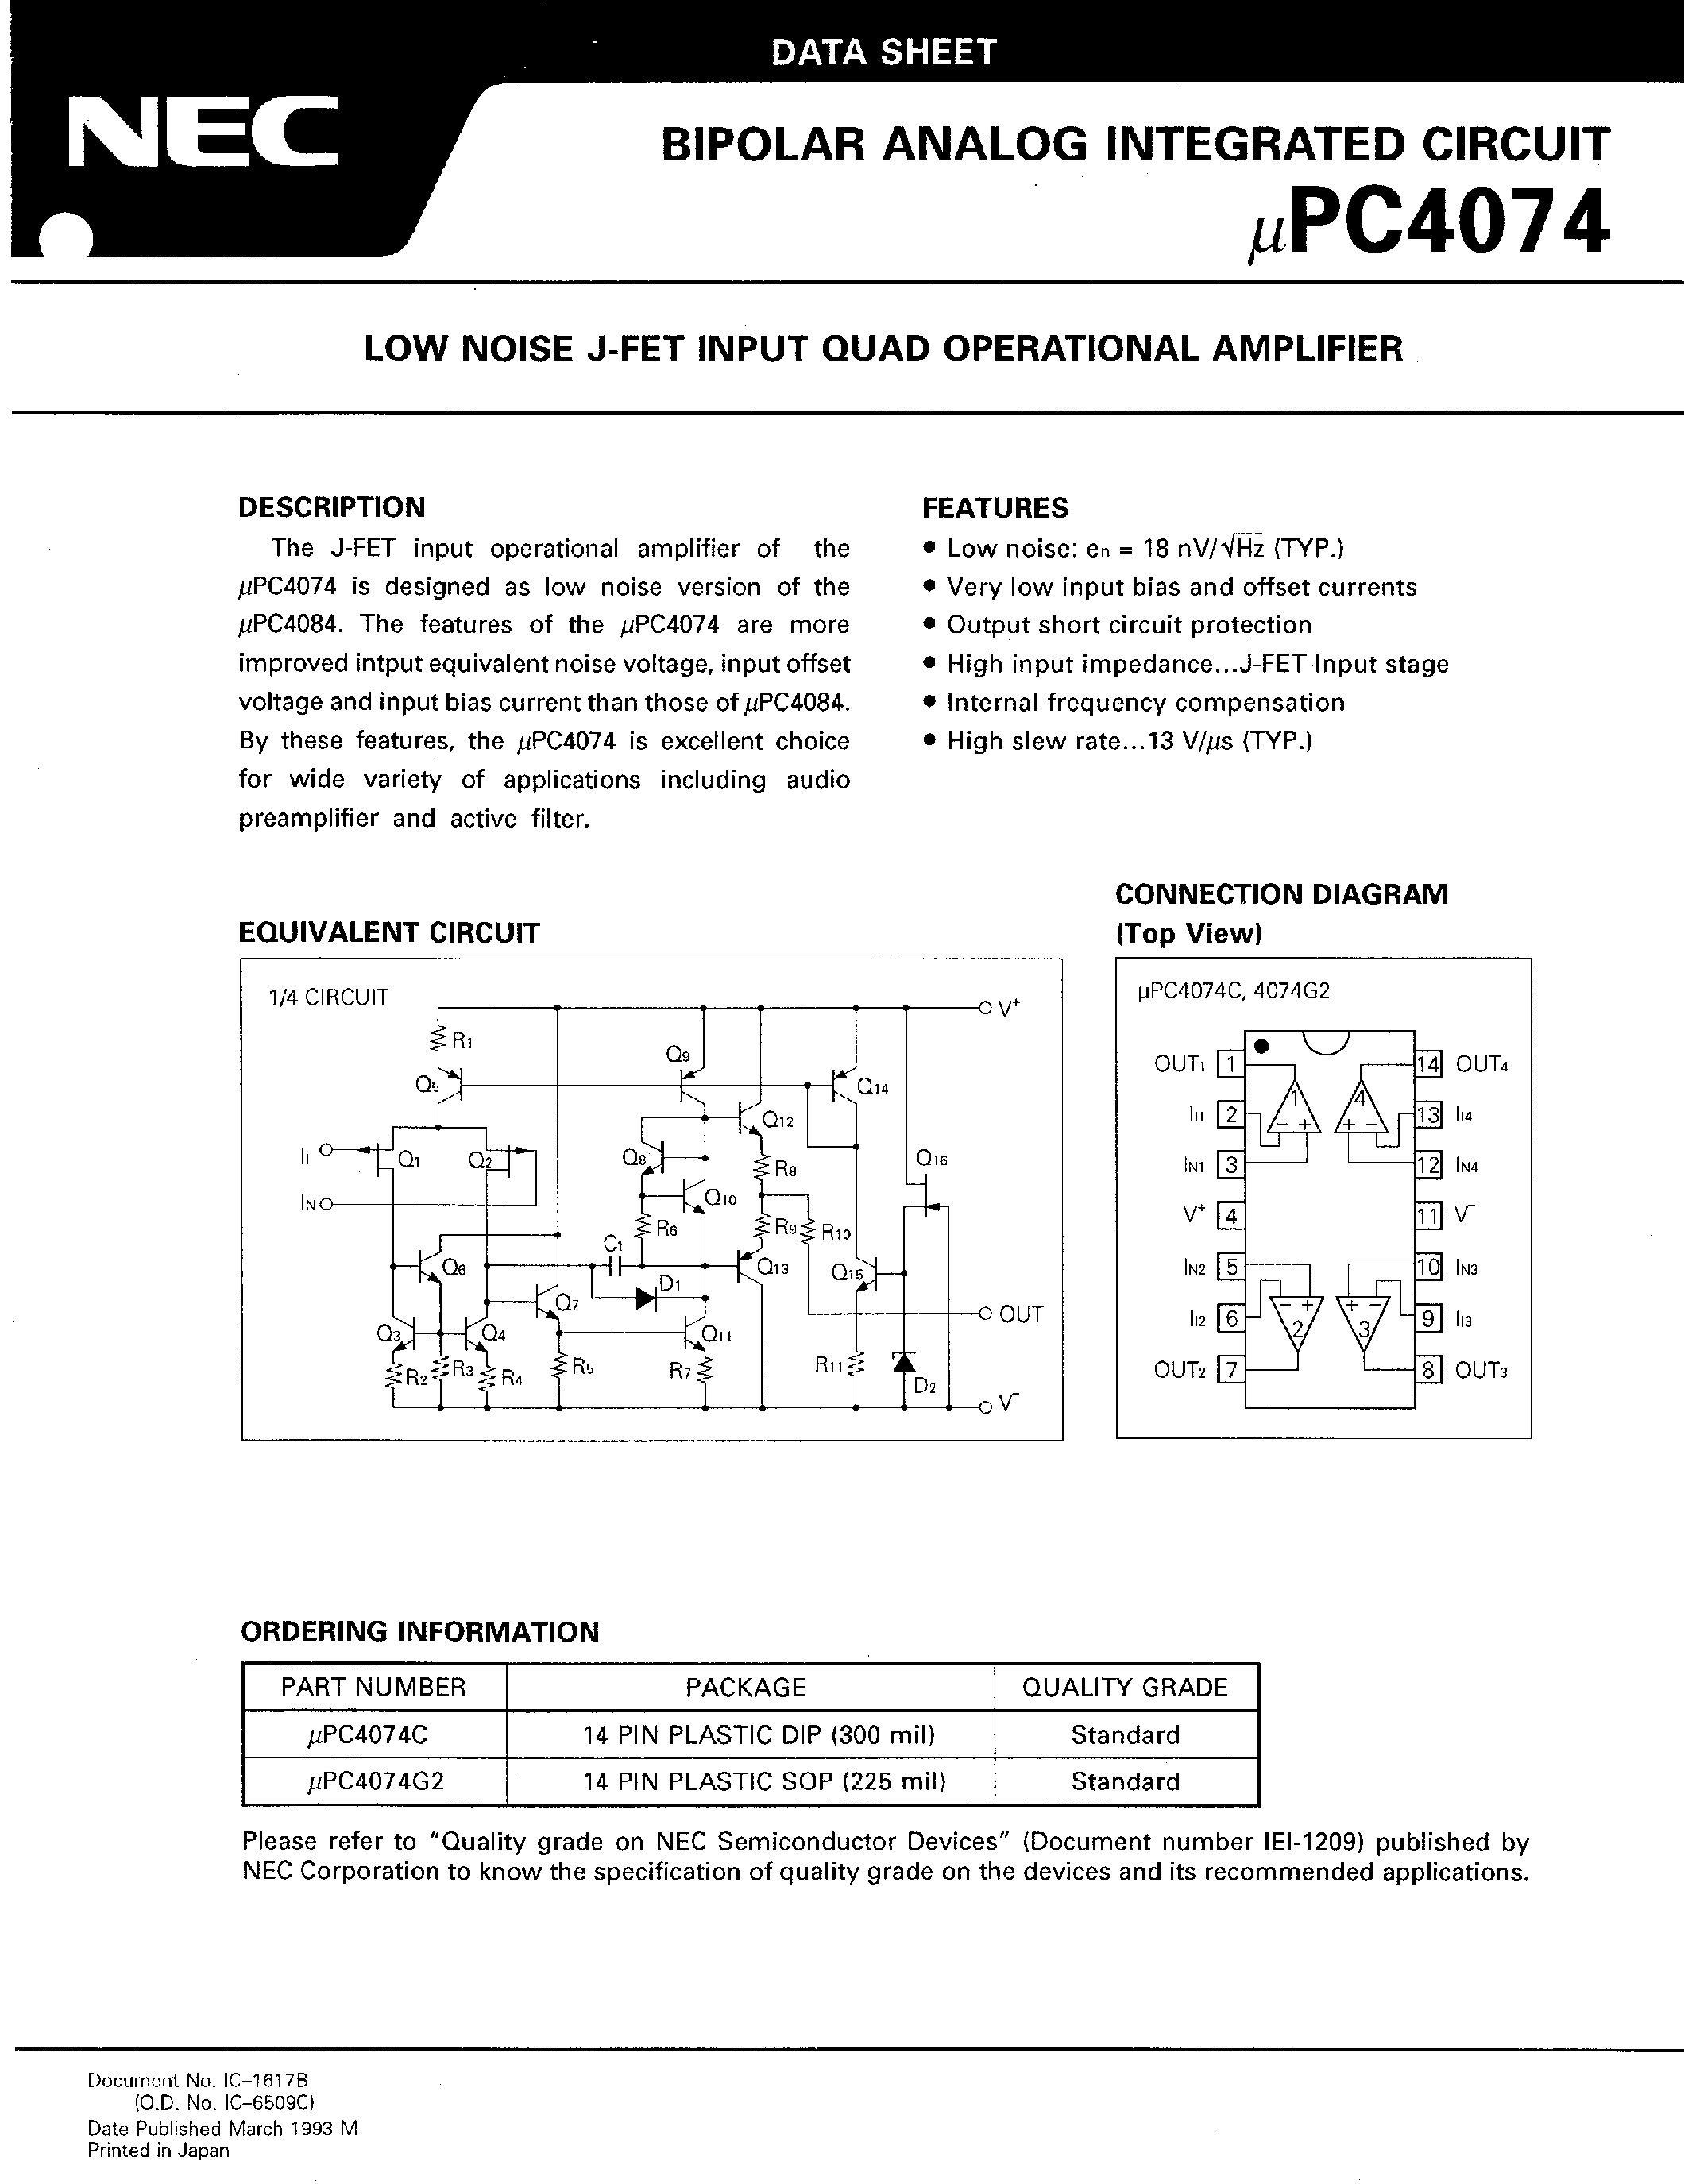 Даташит UPC4074 - LOW NOISE J-FET INPUT QUAD OPERATIONAL AMPLIFIER страница 1